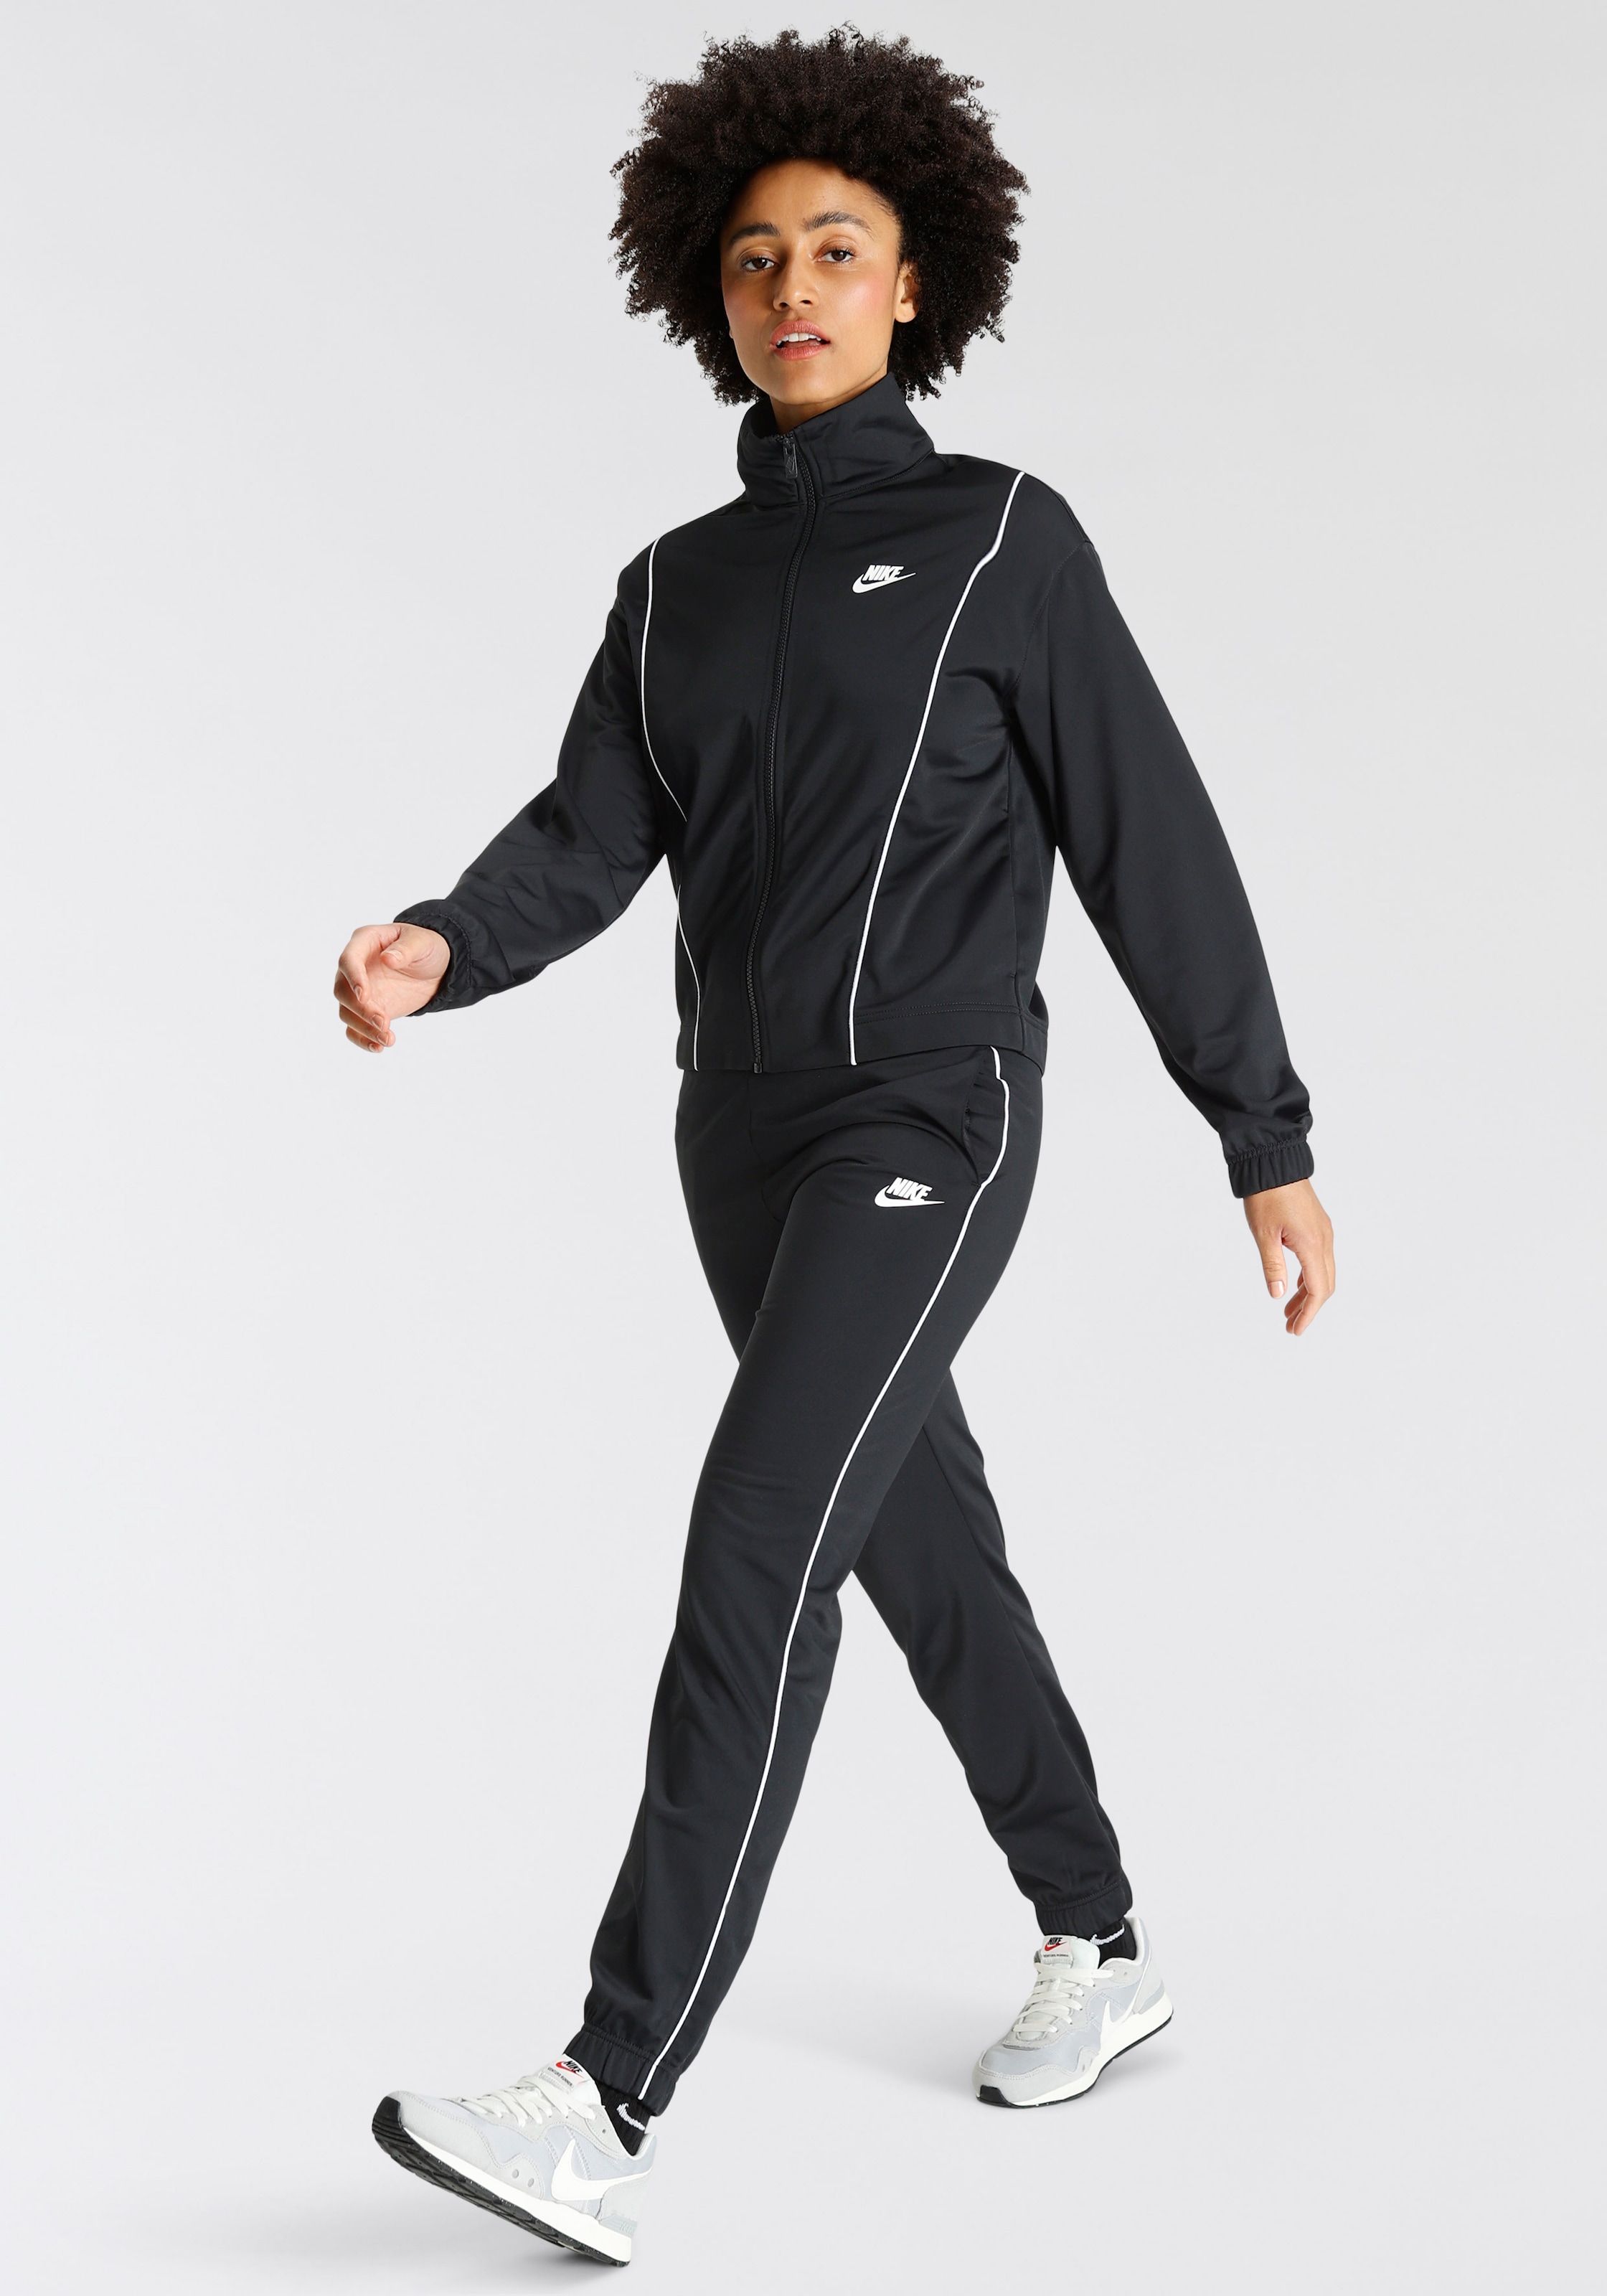 Nike OTTO Sportanzug und bestellen bei schnell - einfach online